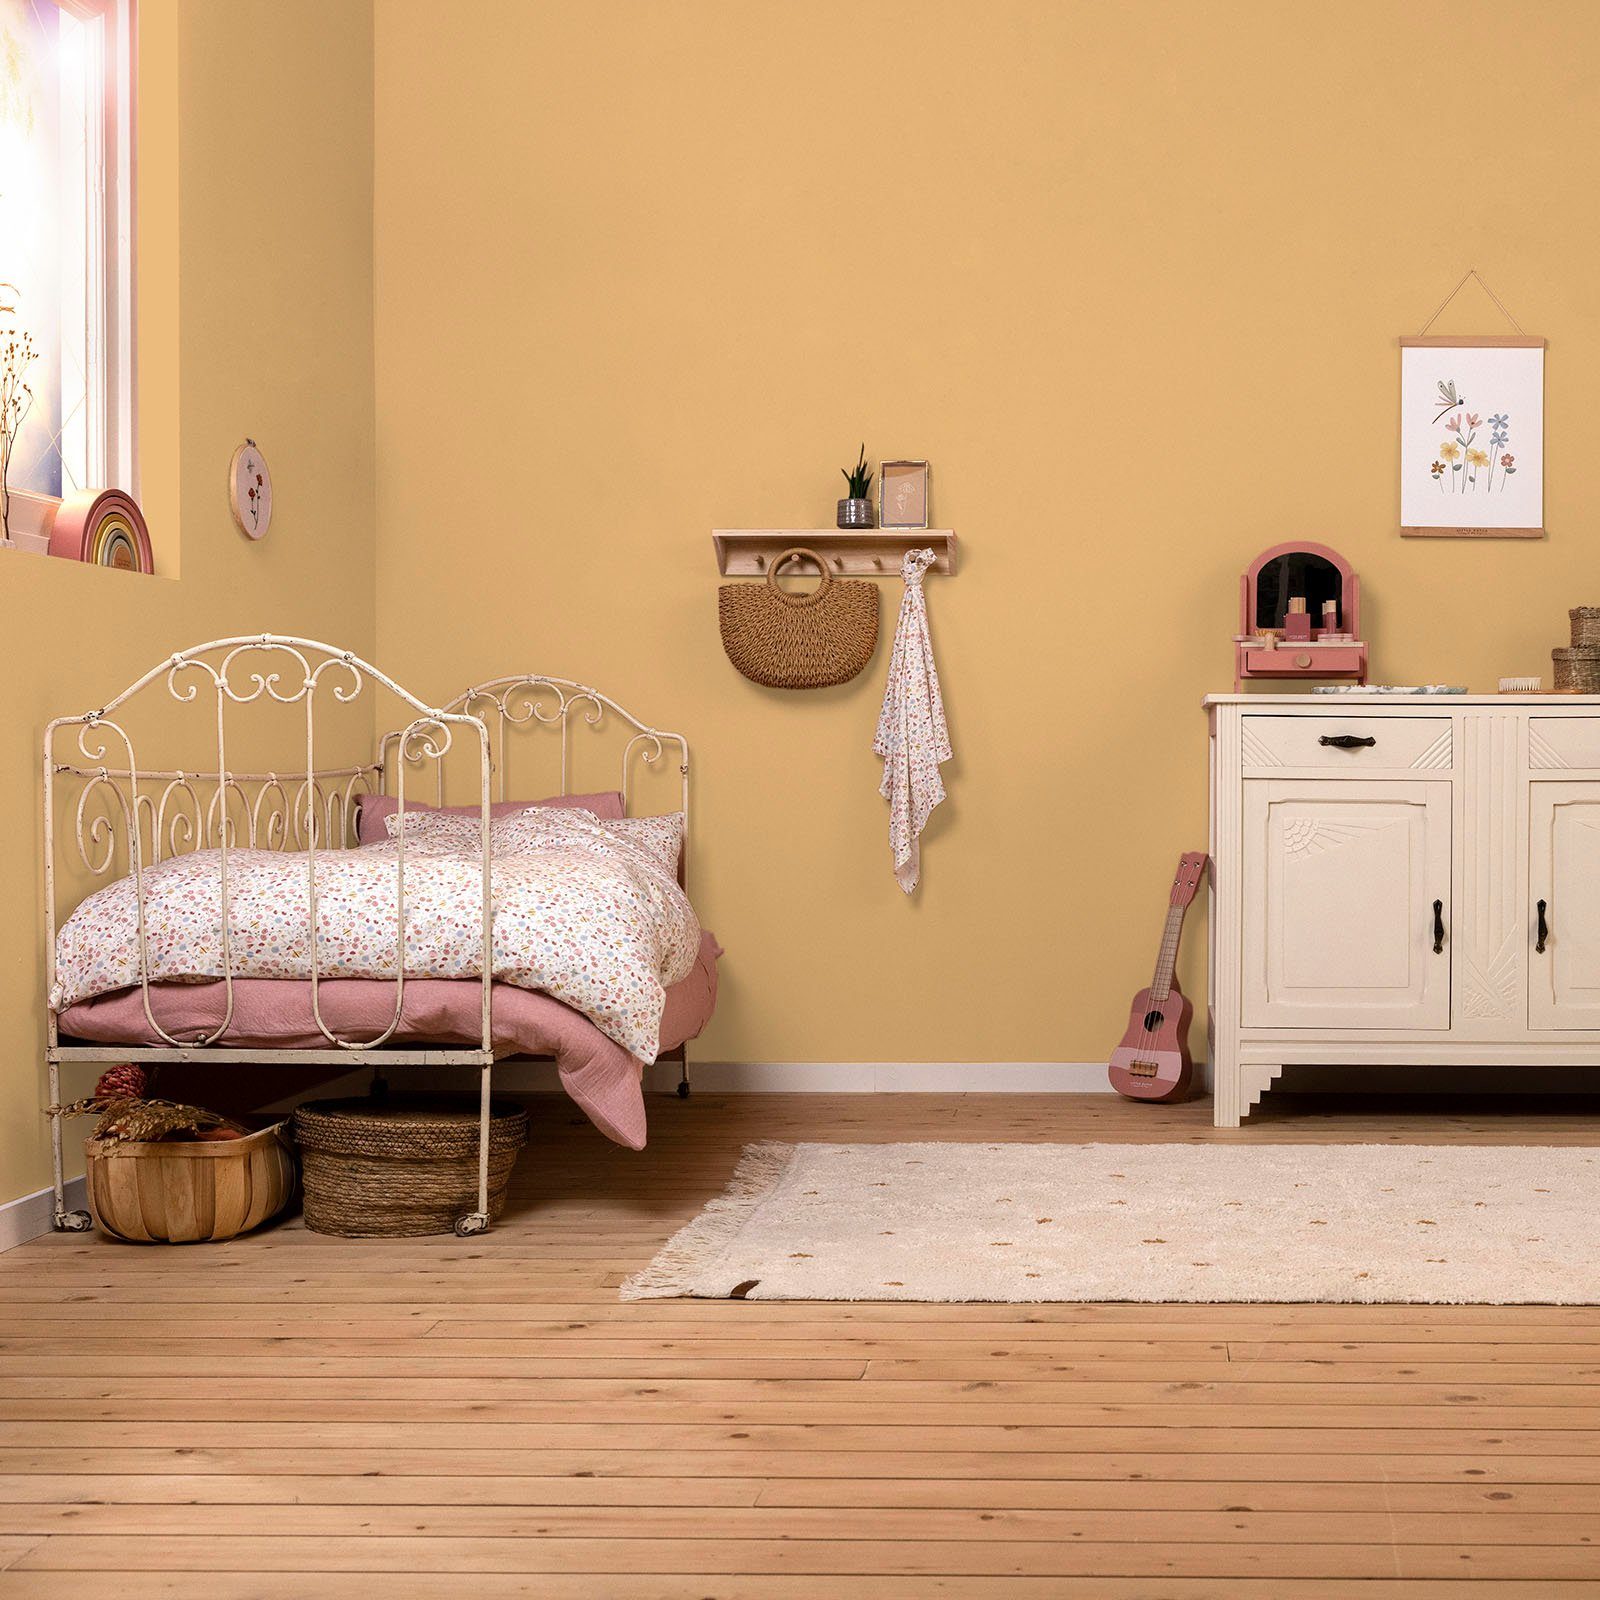 extra und waschbeständig, Faded für geeignet Ocker hochdeckend Kinderzimmer LITTLE matt, DUTCH Wallpaint, Wandfarbe